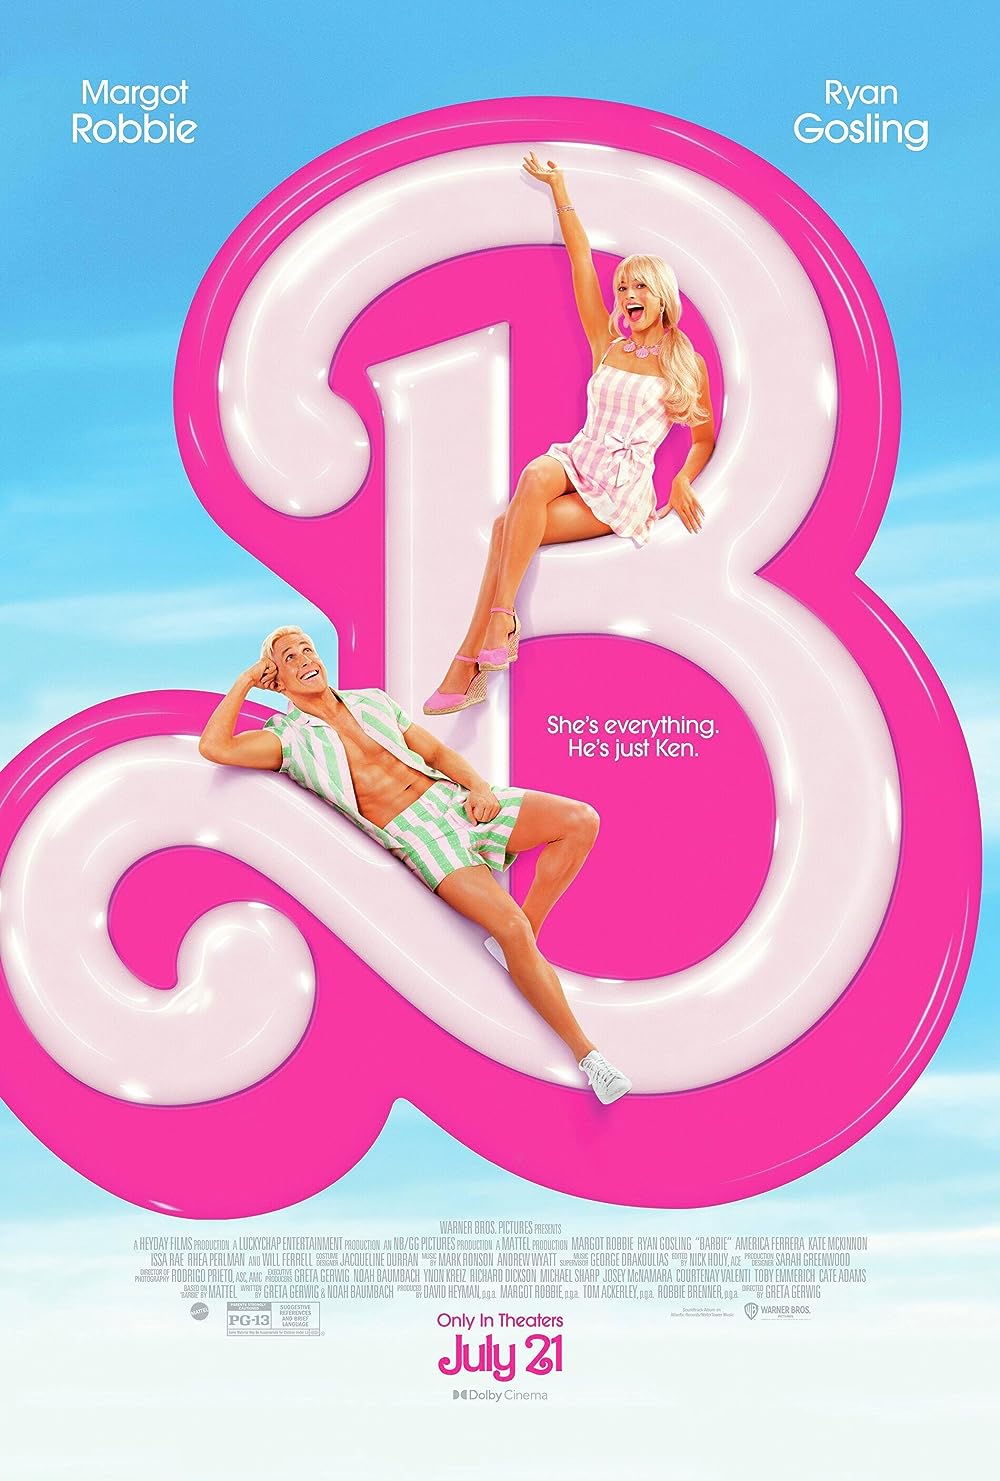 Barbie | Warner Bros. Entertainment Wiki | Fandom